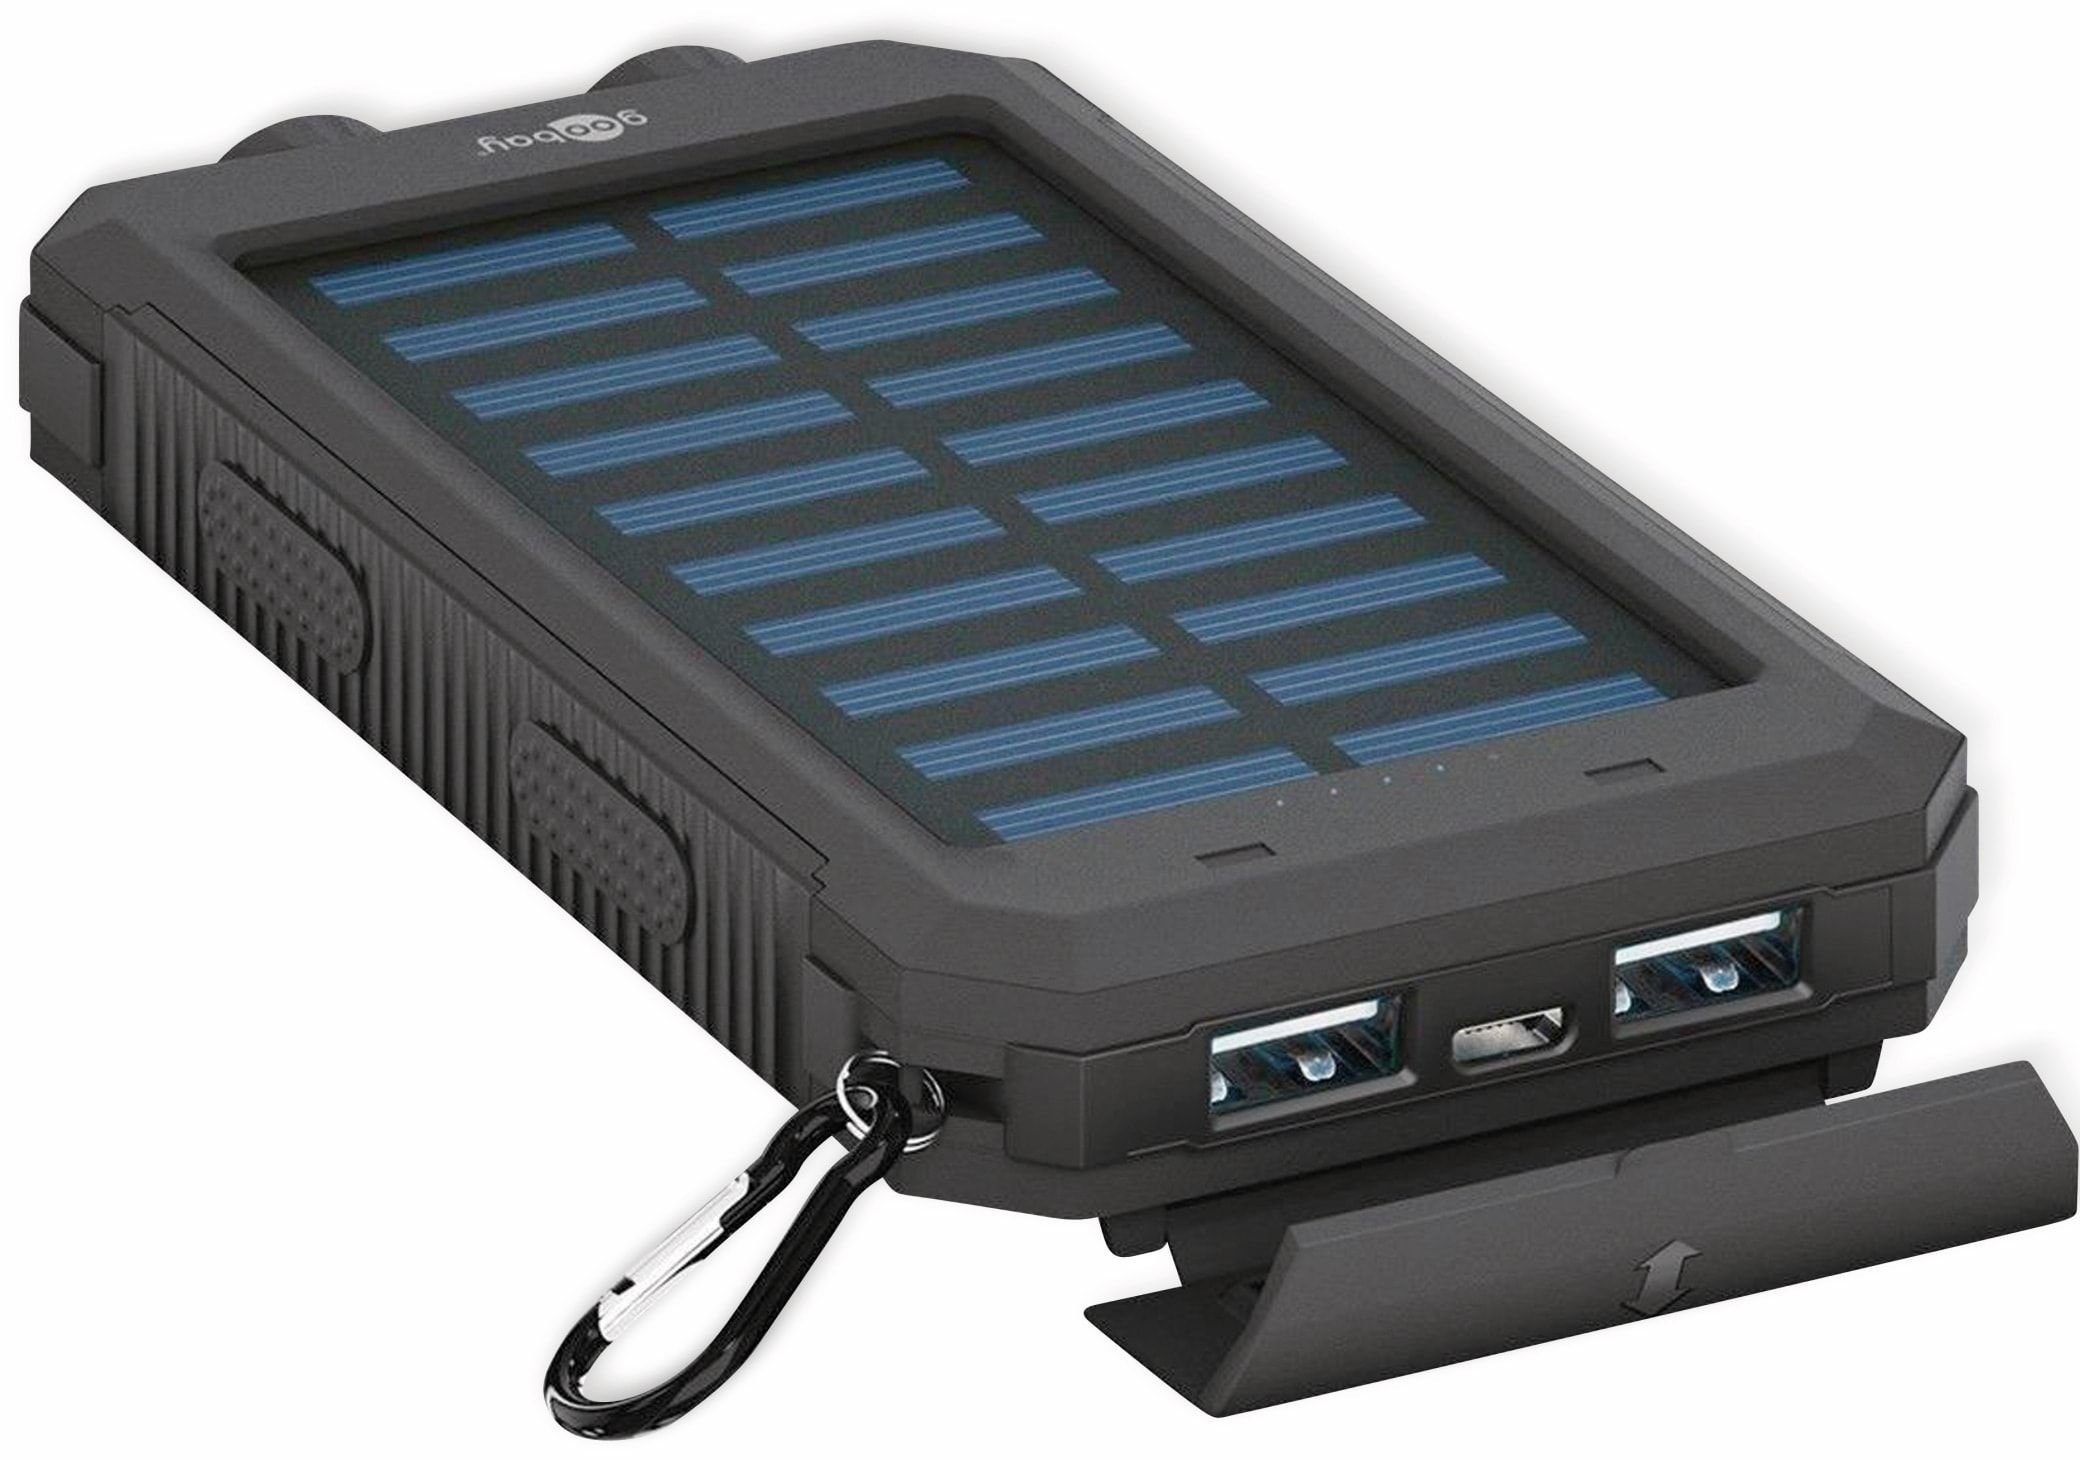 Powerbank Powerbank Solar, GOOBAY mAh 8000 Goobay USB Outdoor